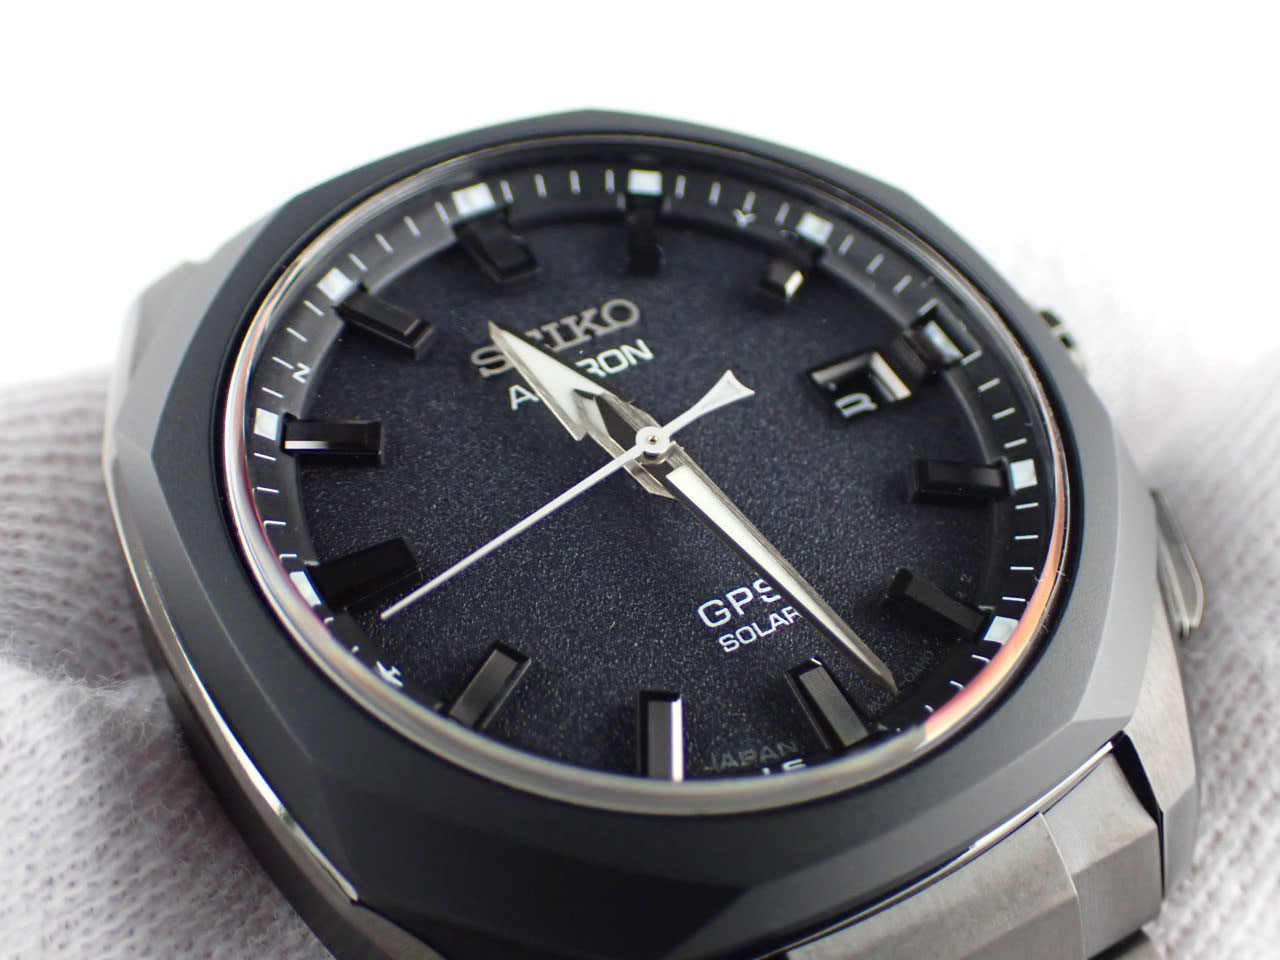 【112939】SEIKO セイコー  SBXD009/3X22-0AD0 アストロン オリジン ブラックダイヤル TI/CE ソーラー 保証書 純正ボックス 腕時計 時計 WATCH メンズ 男性 男 紳士